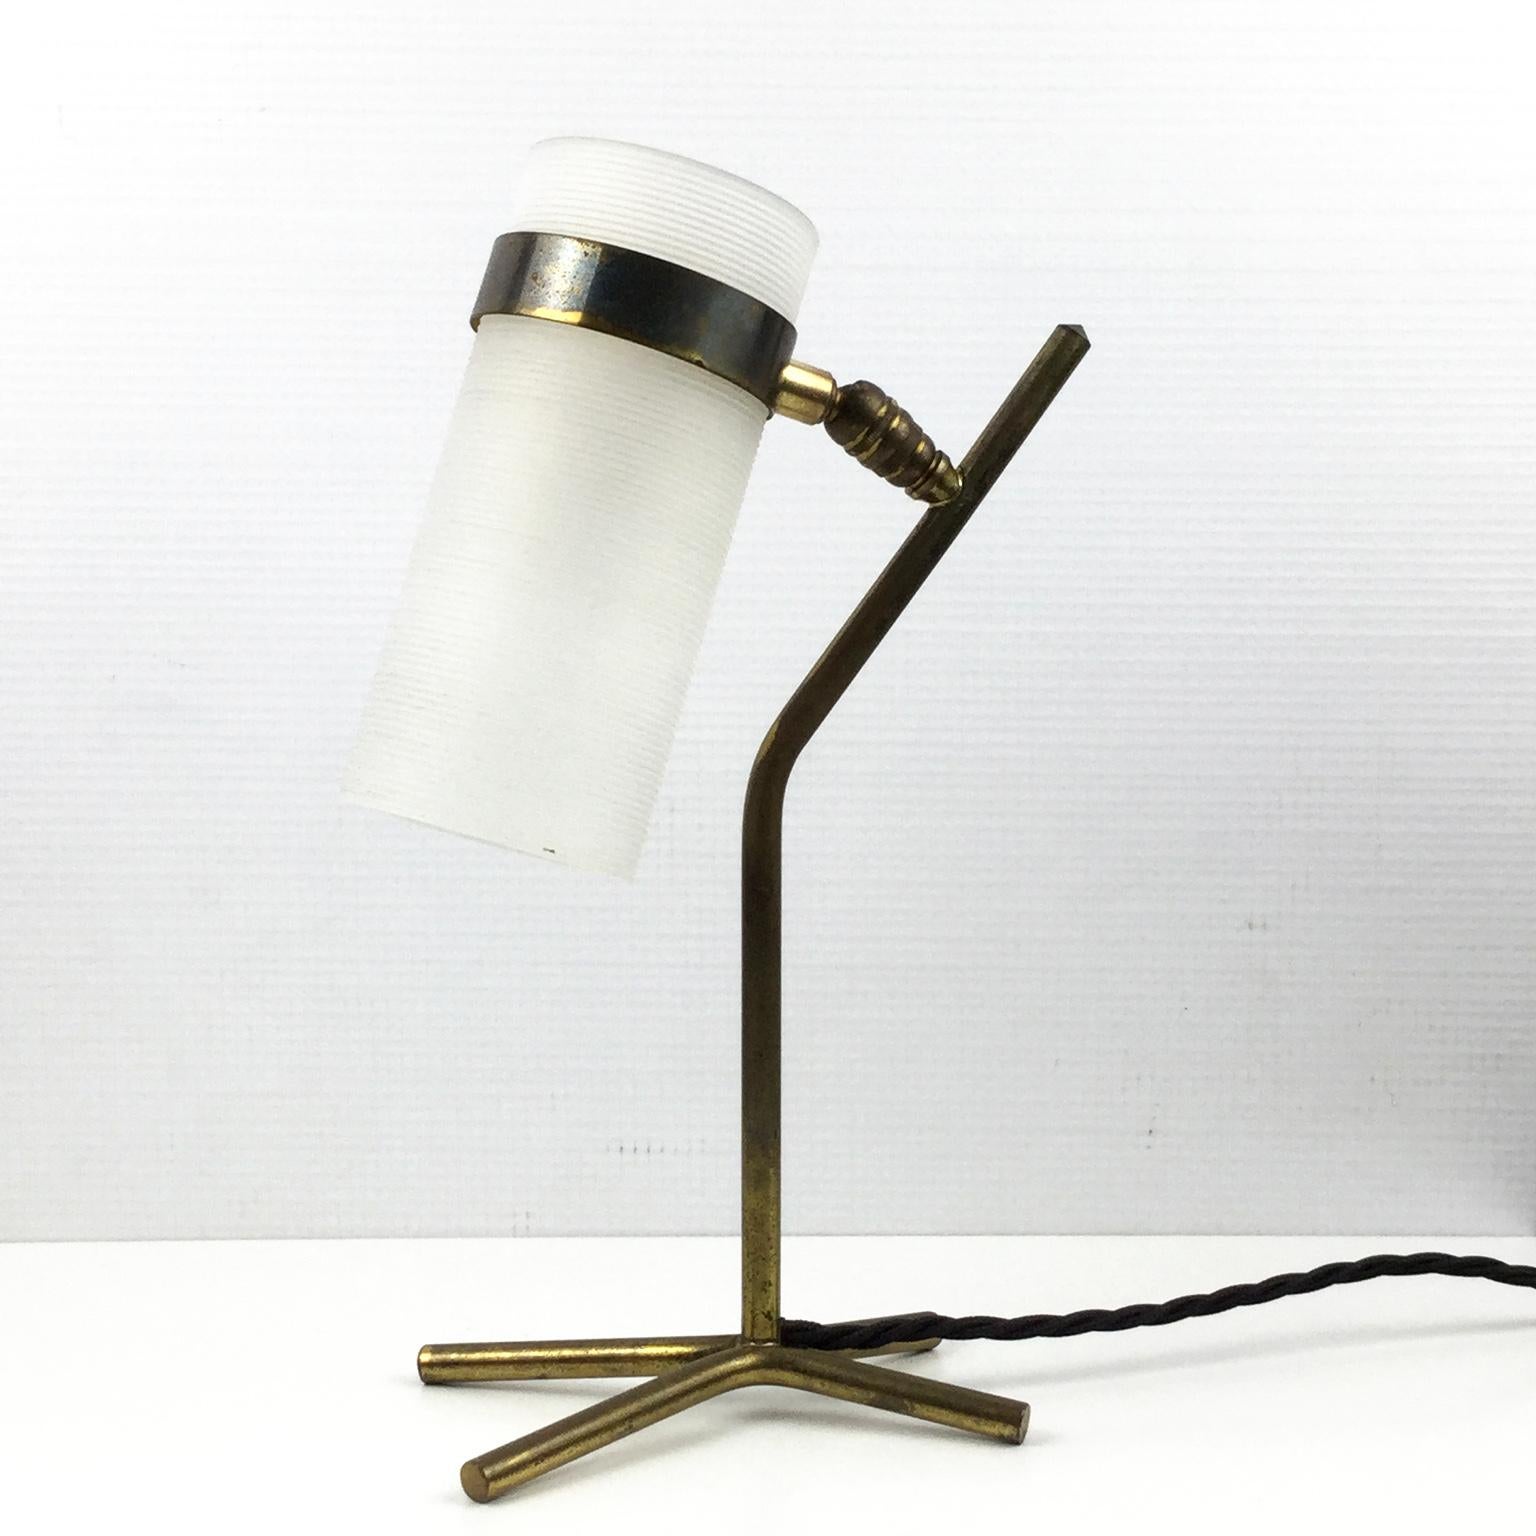 Lampe de table des années 1950, éditée par la Maison Caillat et attribuée à Pierre Guariche avec la collaboration de Jean Boris Lacroix.
Base en laiton en forme de X avec perplex strié réglable
Recâblage avec une petite douille à vis et un câble